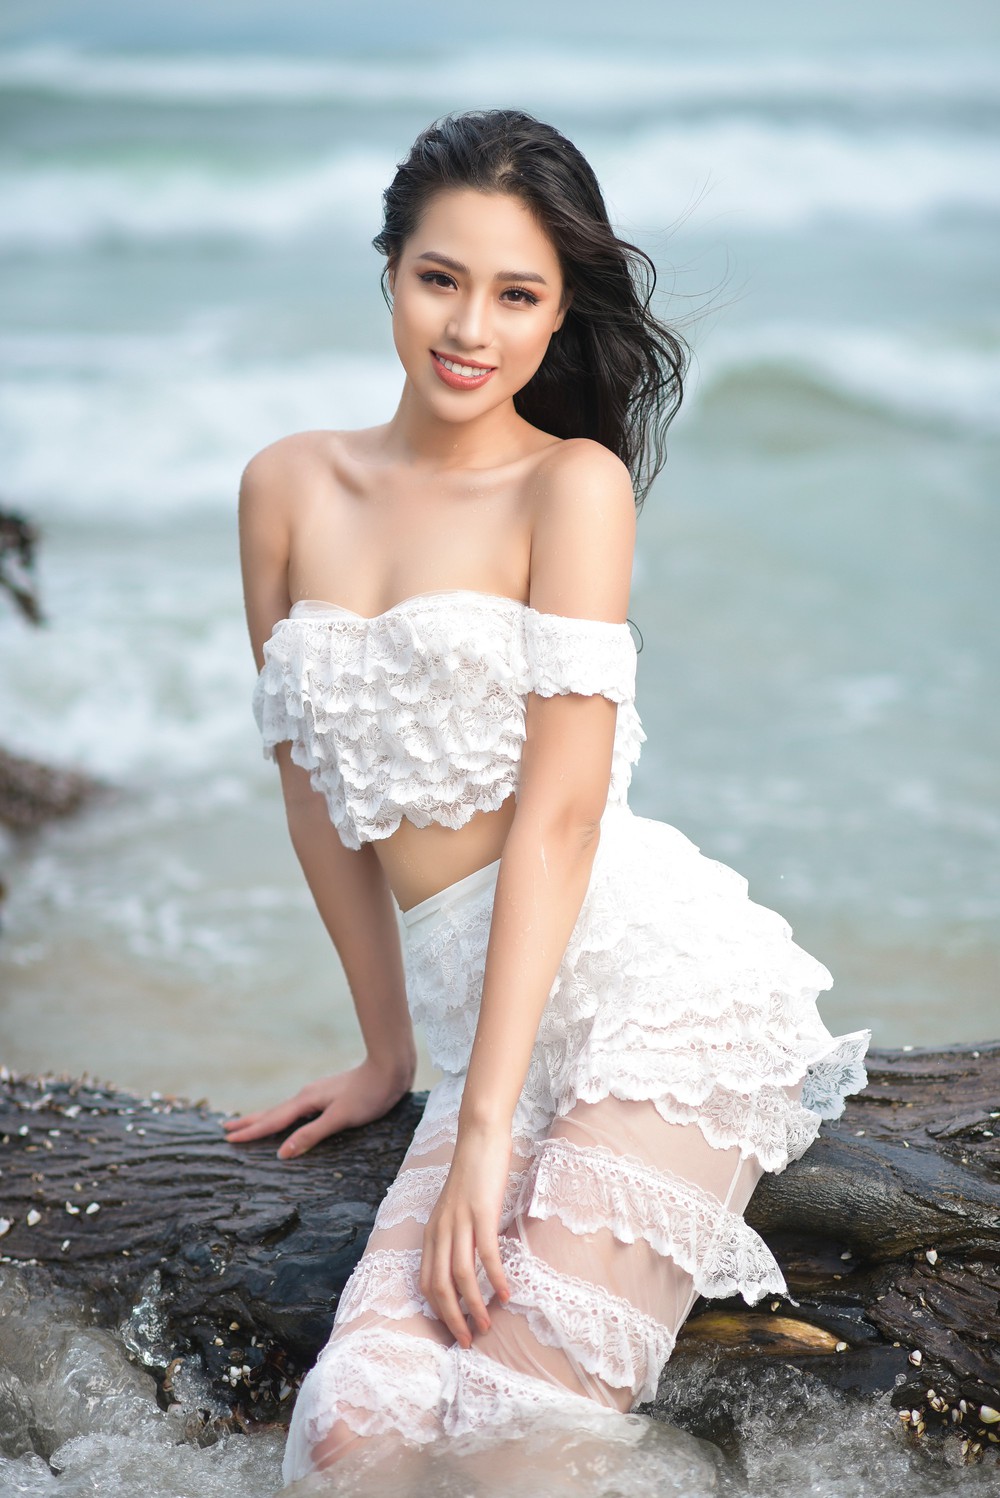 Vẻ gợi cảm của người đẹp sinh năm 2000 gây tiếc nuối nhất tại Hoa hậu Việt Nam 2018 - Ảnh 10.